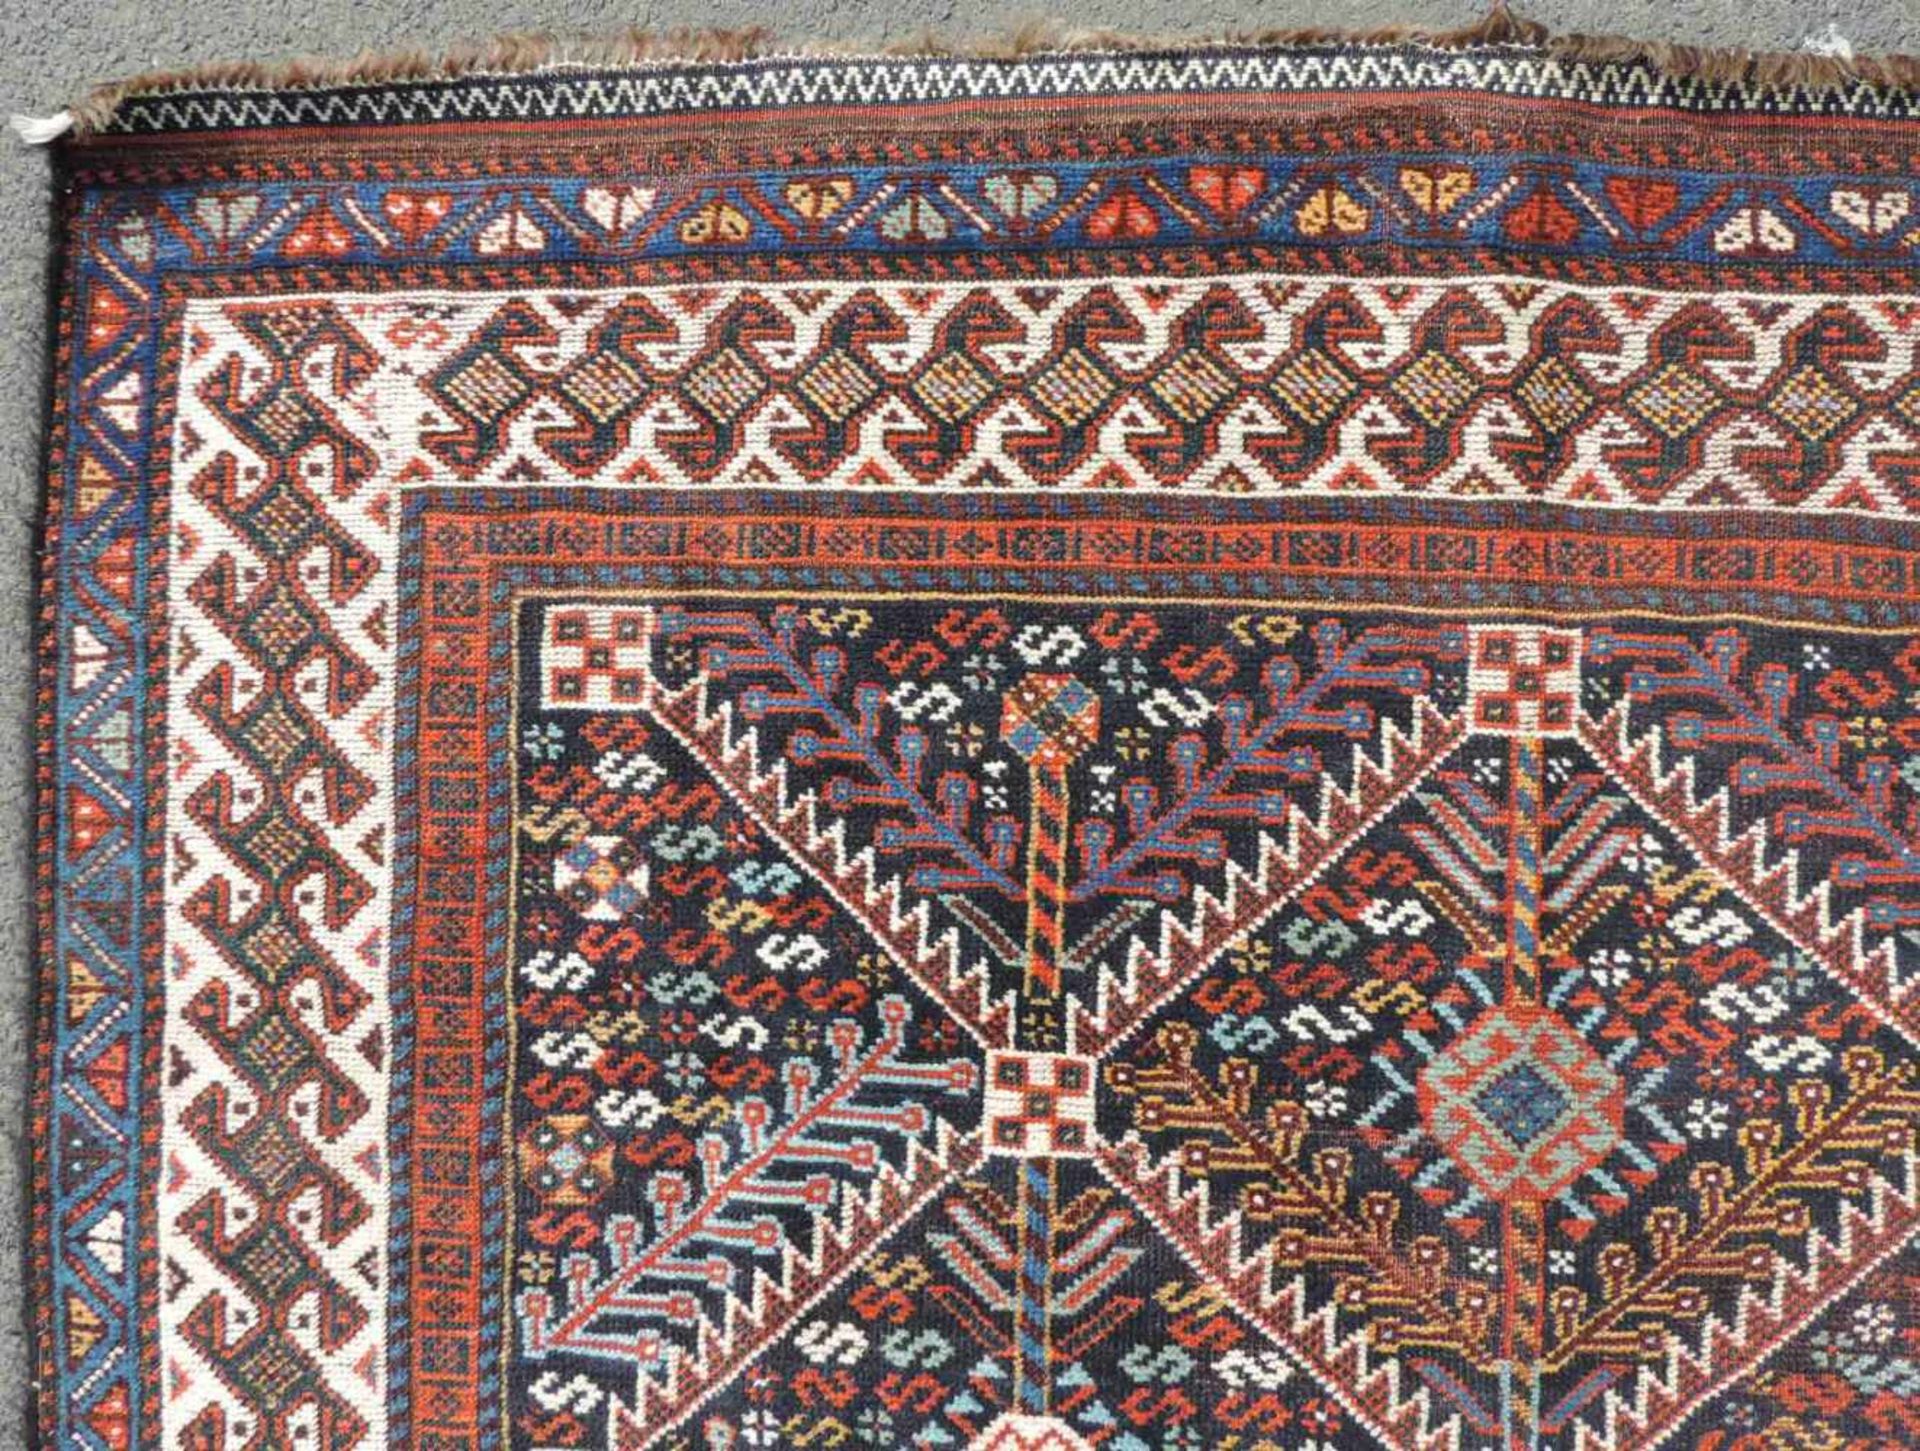 Niriz Perserteppich. Iran. Antik, um 1910.278 cm x 156 cm. Handgeknüpft. Wolle auf Wolle. - Image 2 of 13